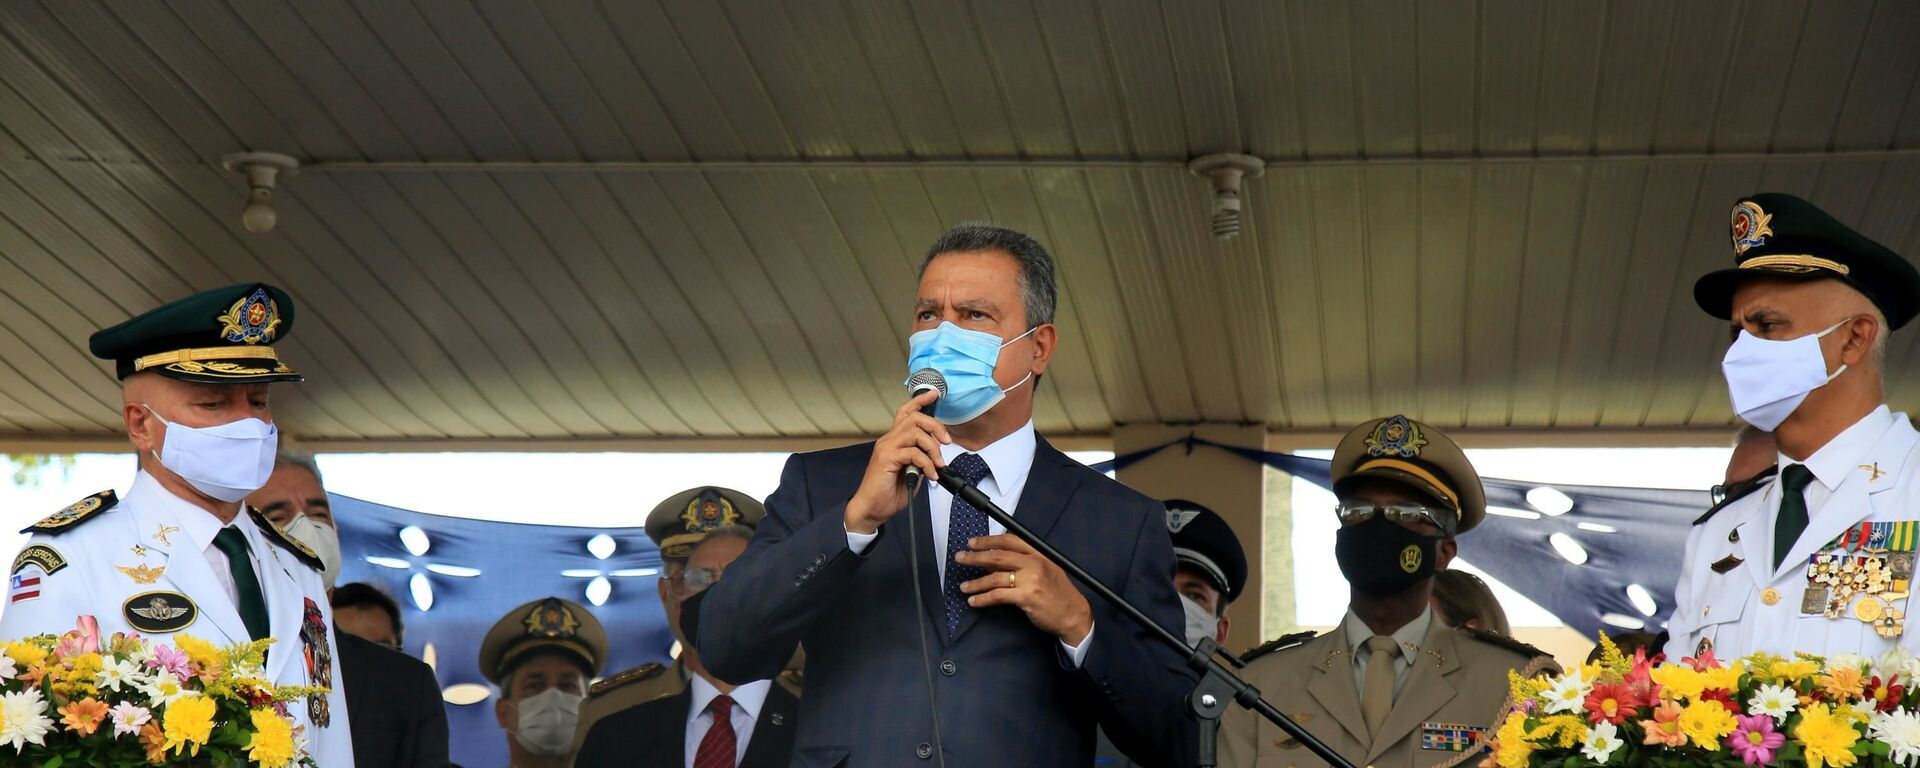 Em Salvador, o governador da Bahia, Rui Costa (PT), participa de cerimônia de troca do comando da Polícia Militar em meio à pandemia da COVID-19, em 13 de janeiro de 2021 - Sputnik Brasil, 1920, 28.12.2021